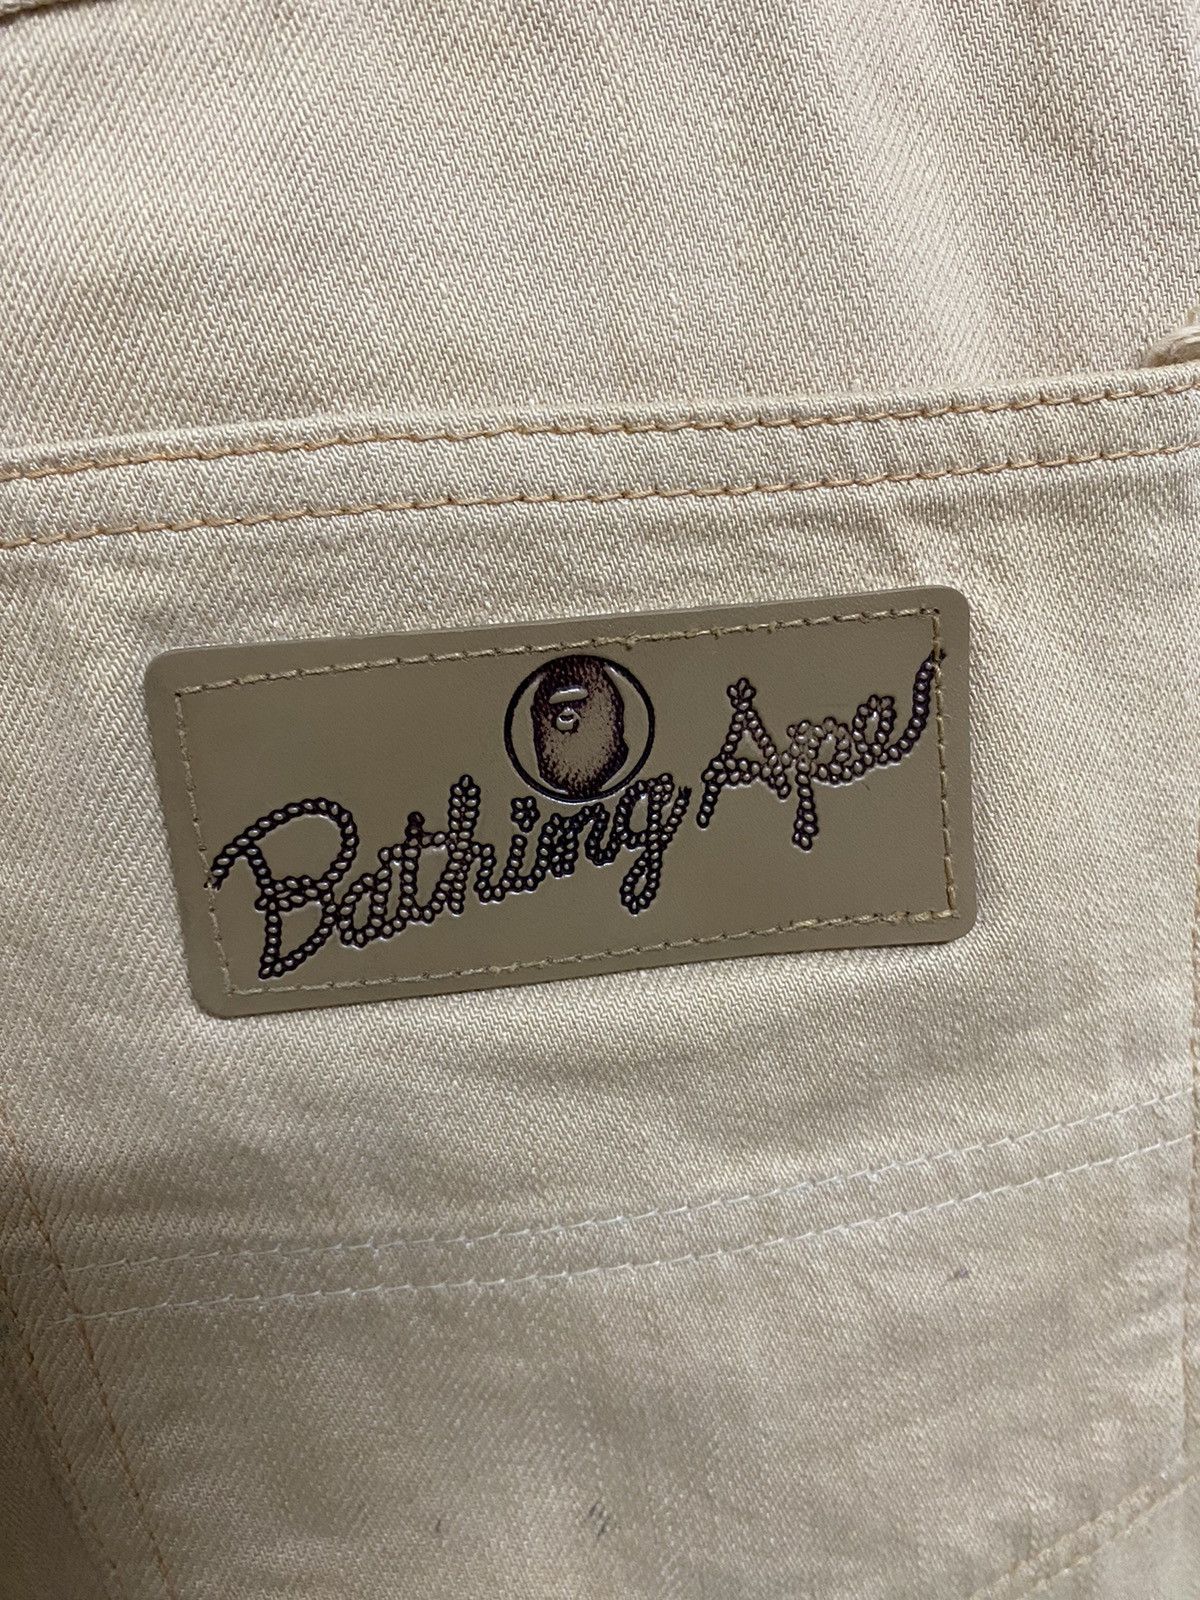 Vintage BAPE Cargo Jeans Japan Made - 8